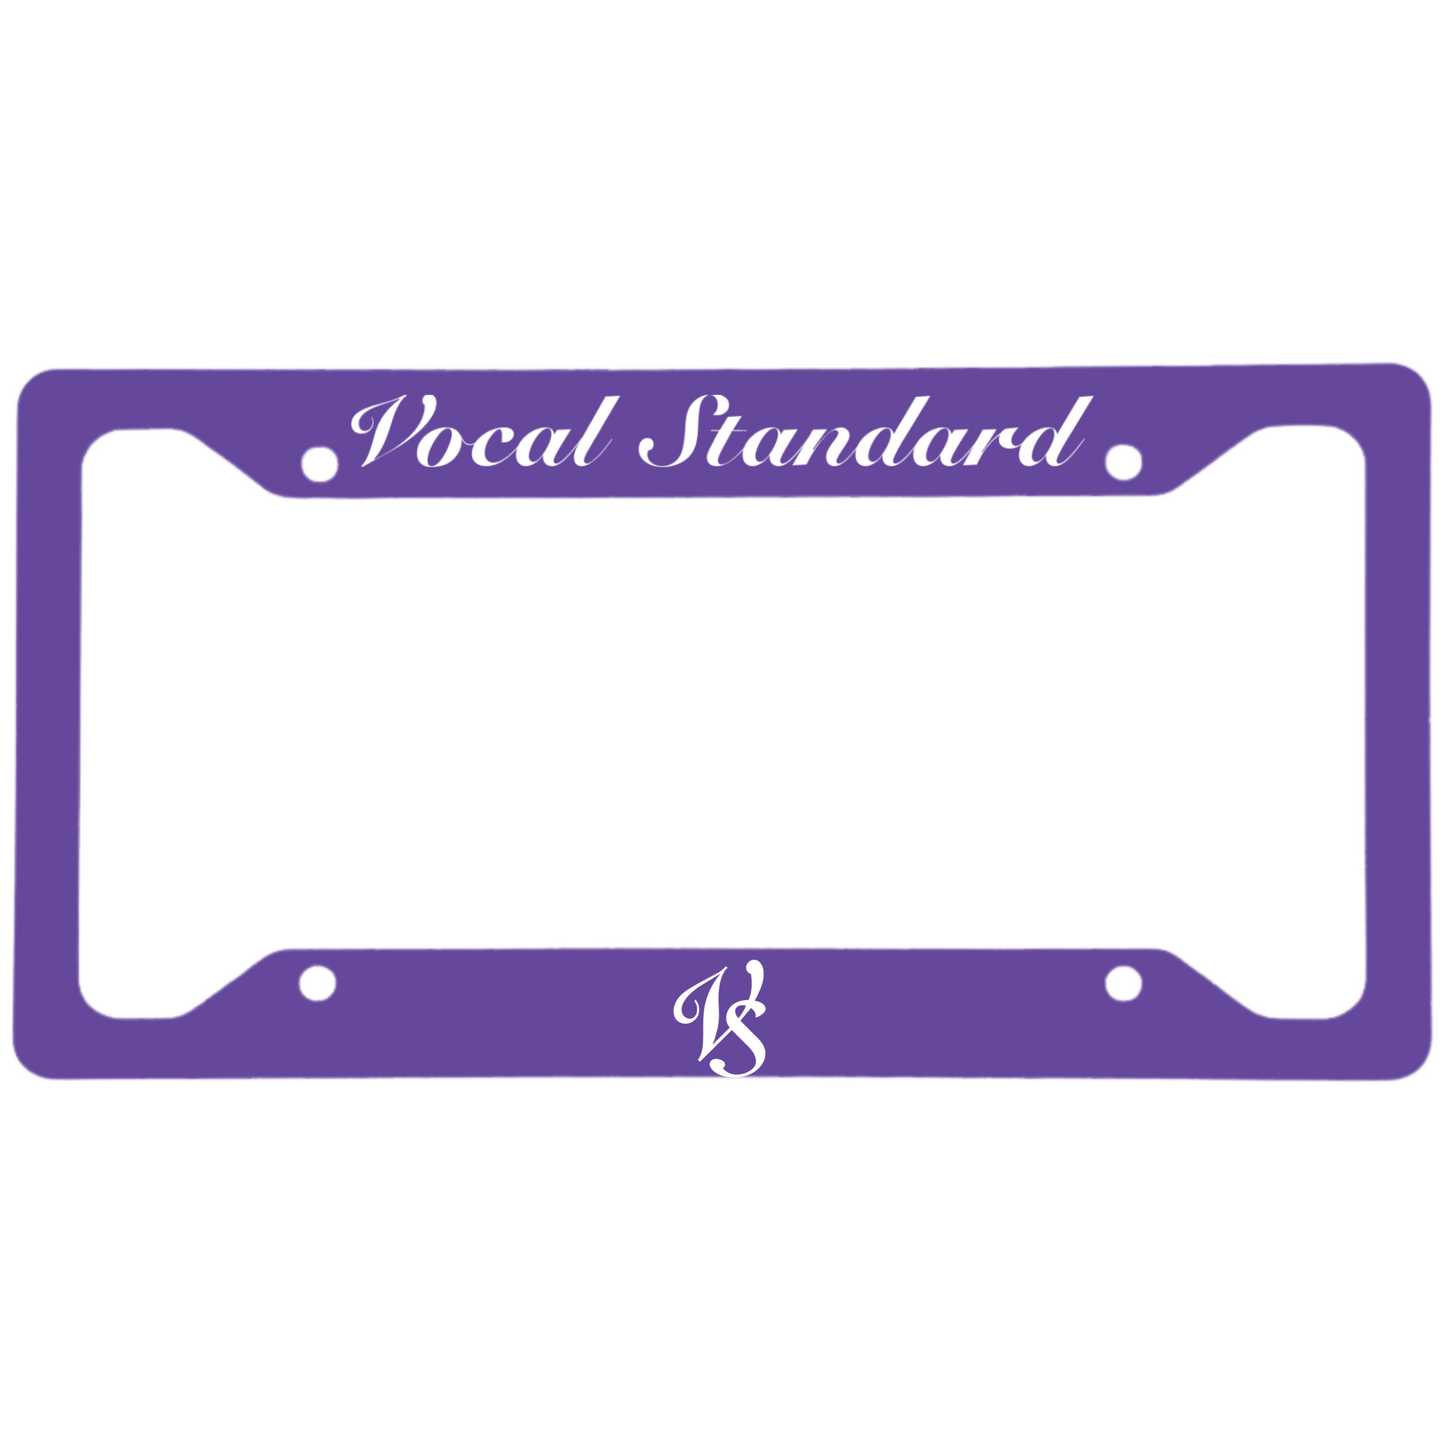 Vocal Standard - Gloss White Aluminum License Plate Frame